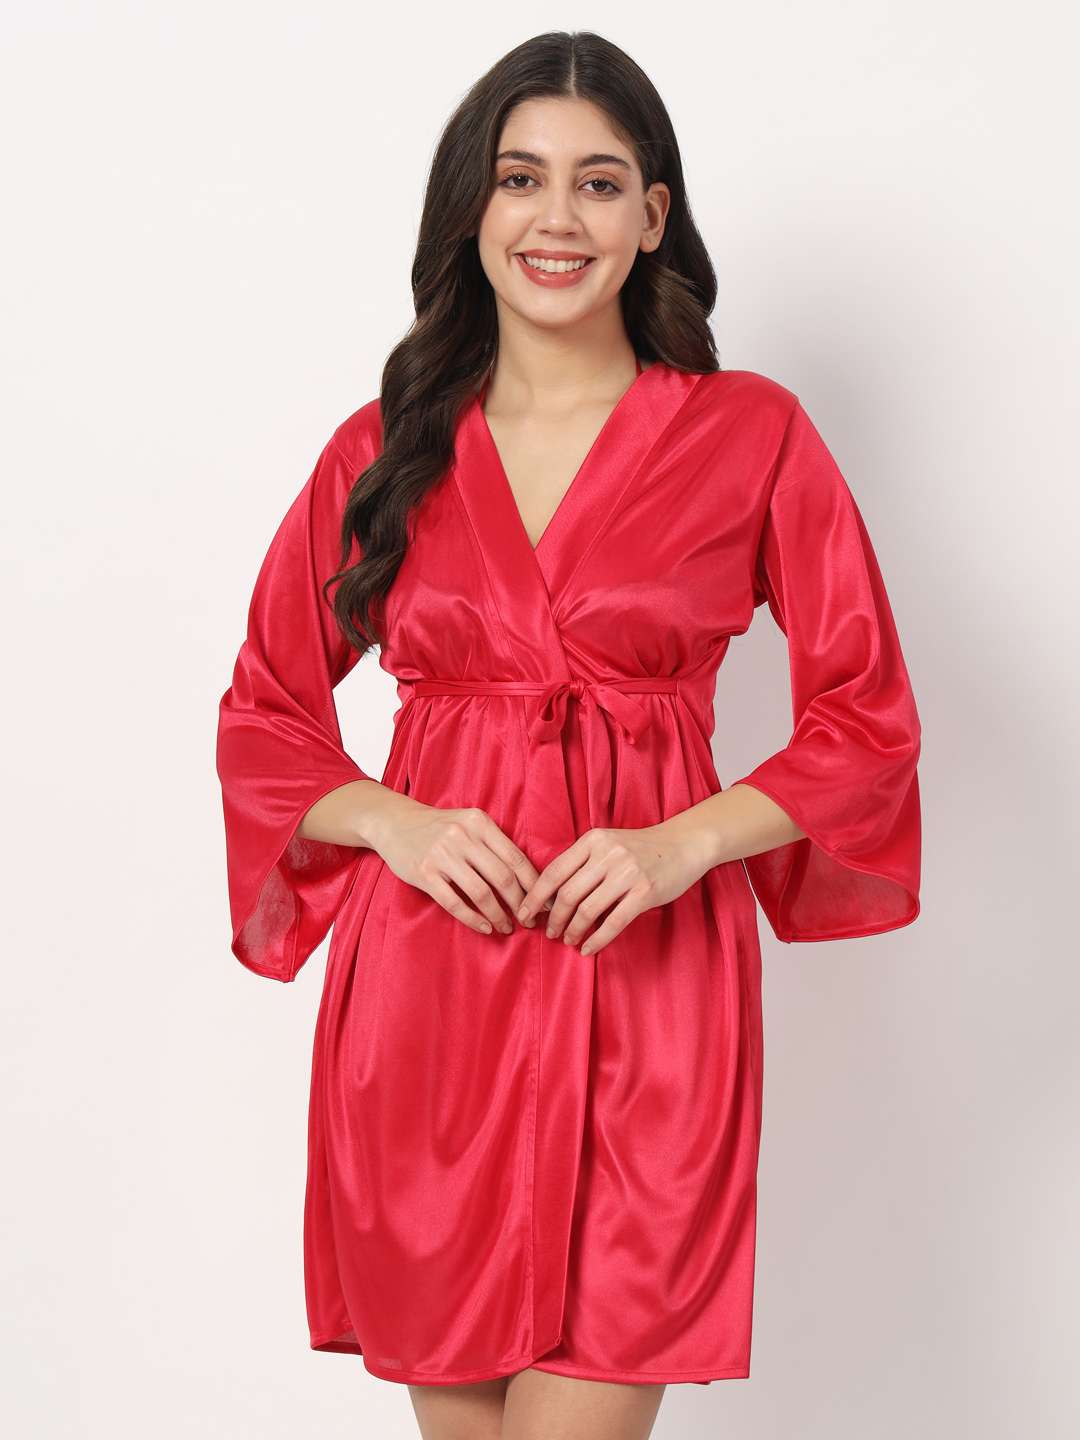 Romantic Nightwear Pajamas Wine Red Silk Satin